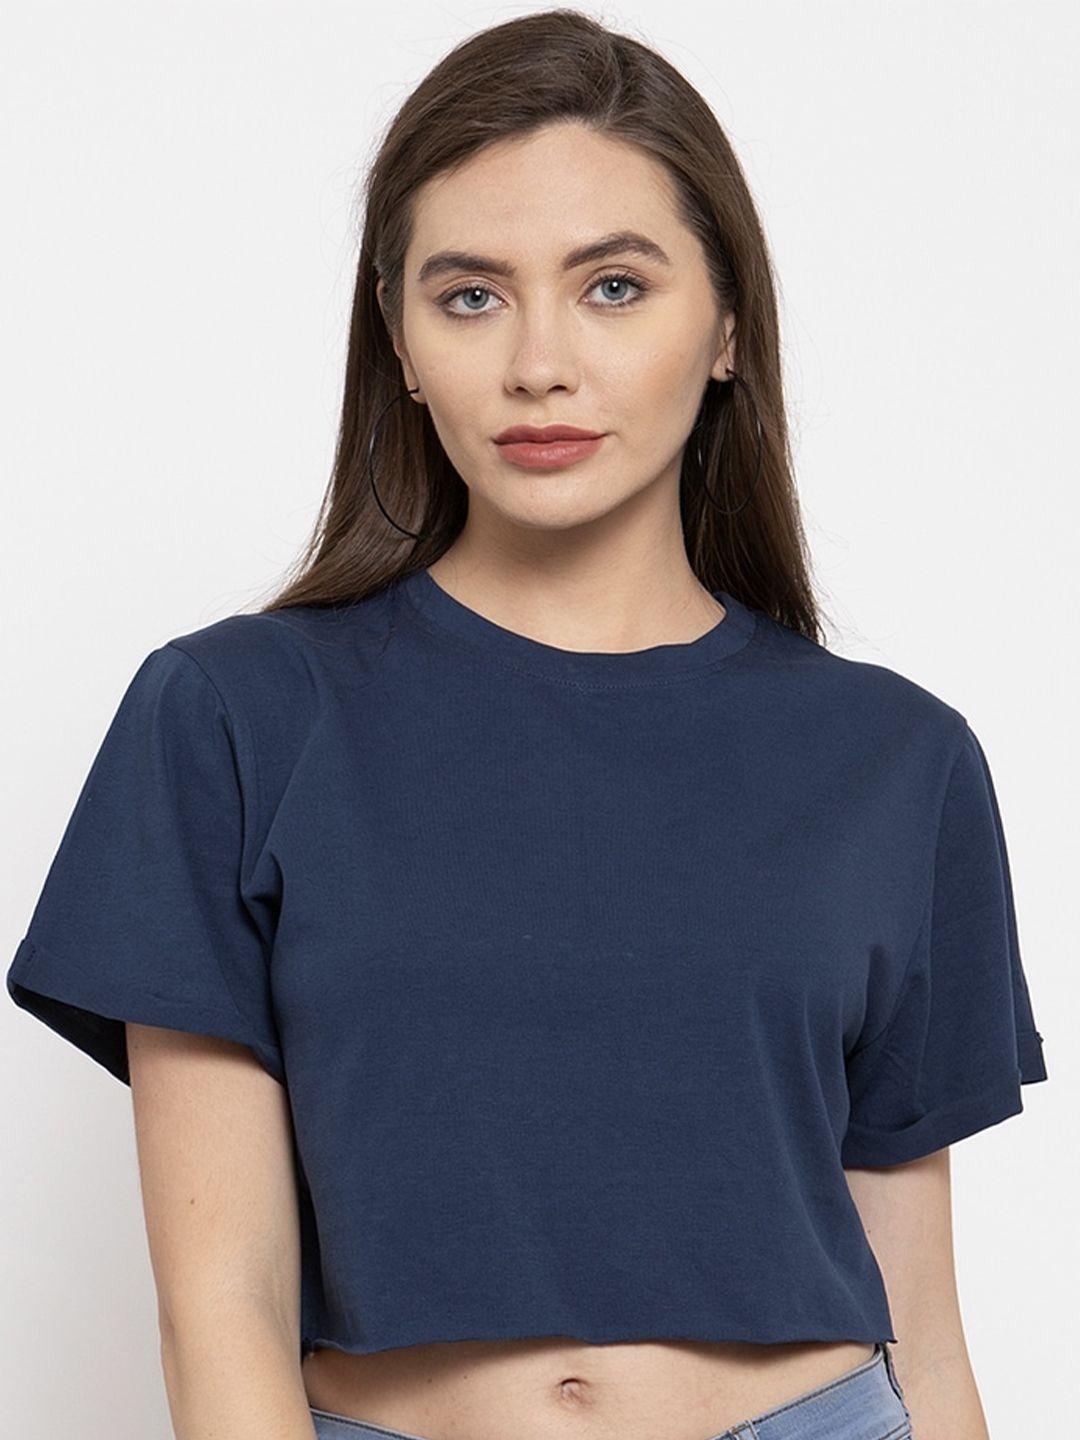 door74 women navy blue t-shirt